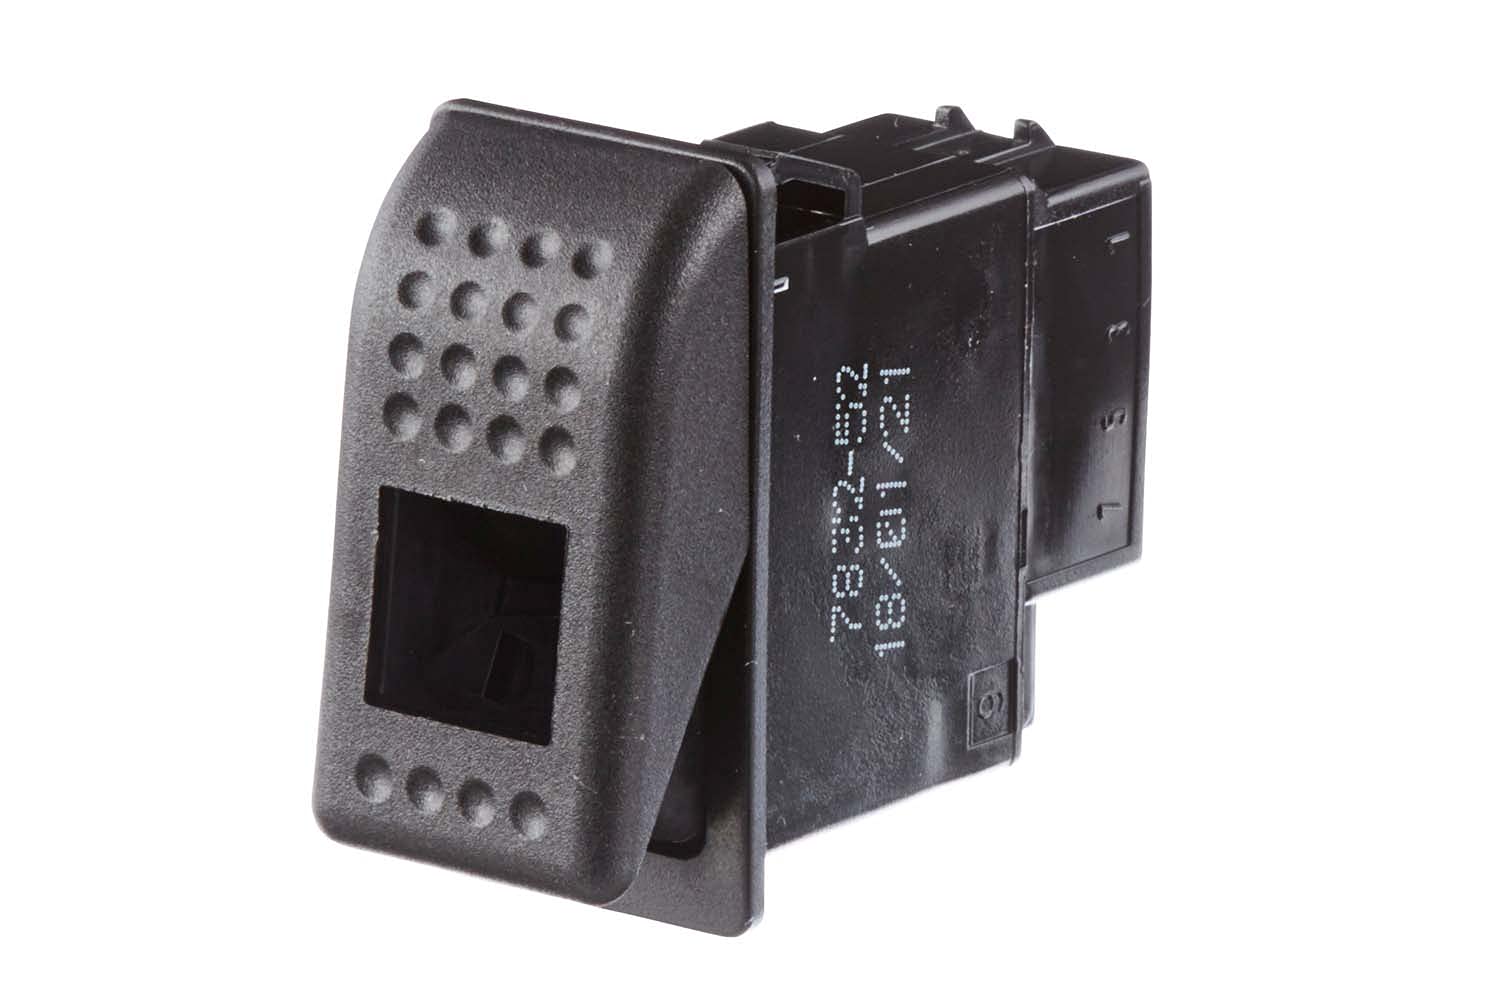 HELLA - Schalter - Wippbetätigung - Ausstattungsvar.: I->0 - Anschlussanzahl: 6 - ohne Komfortfunktion - 6GM 007 832-521 von Hella